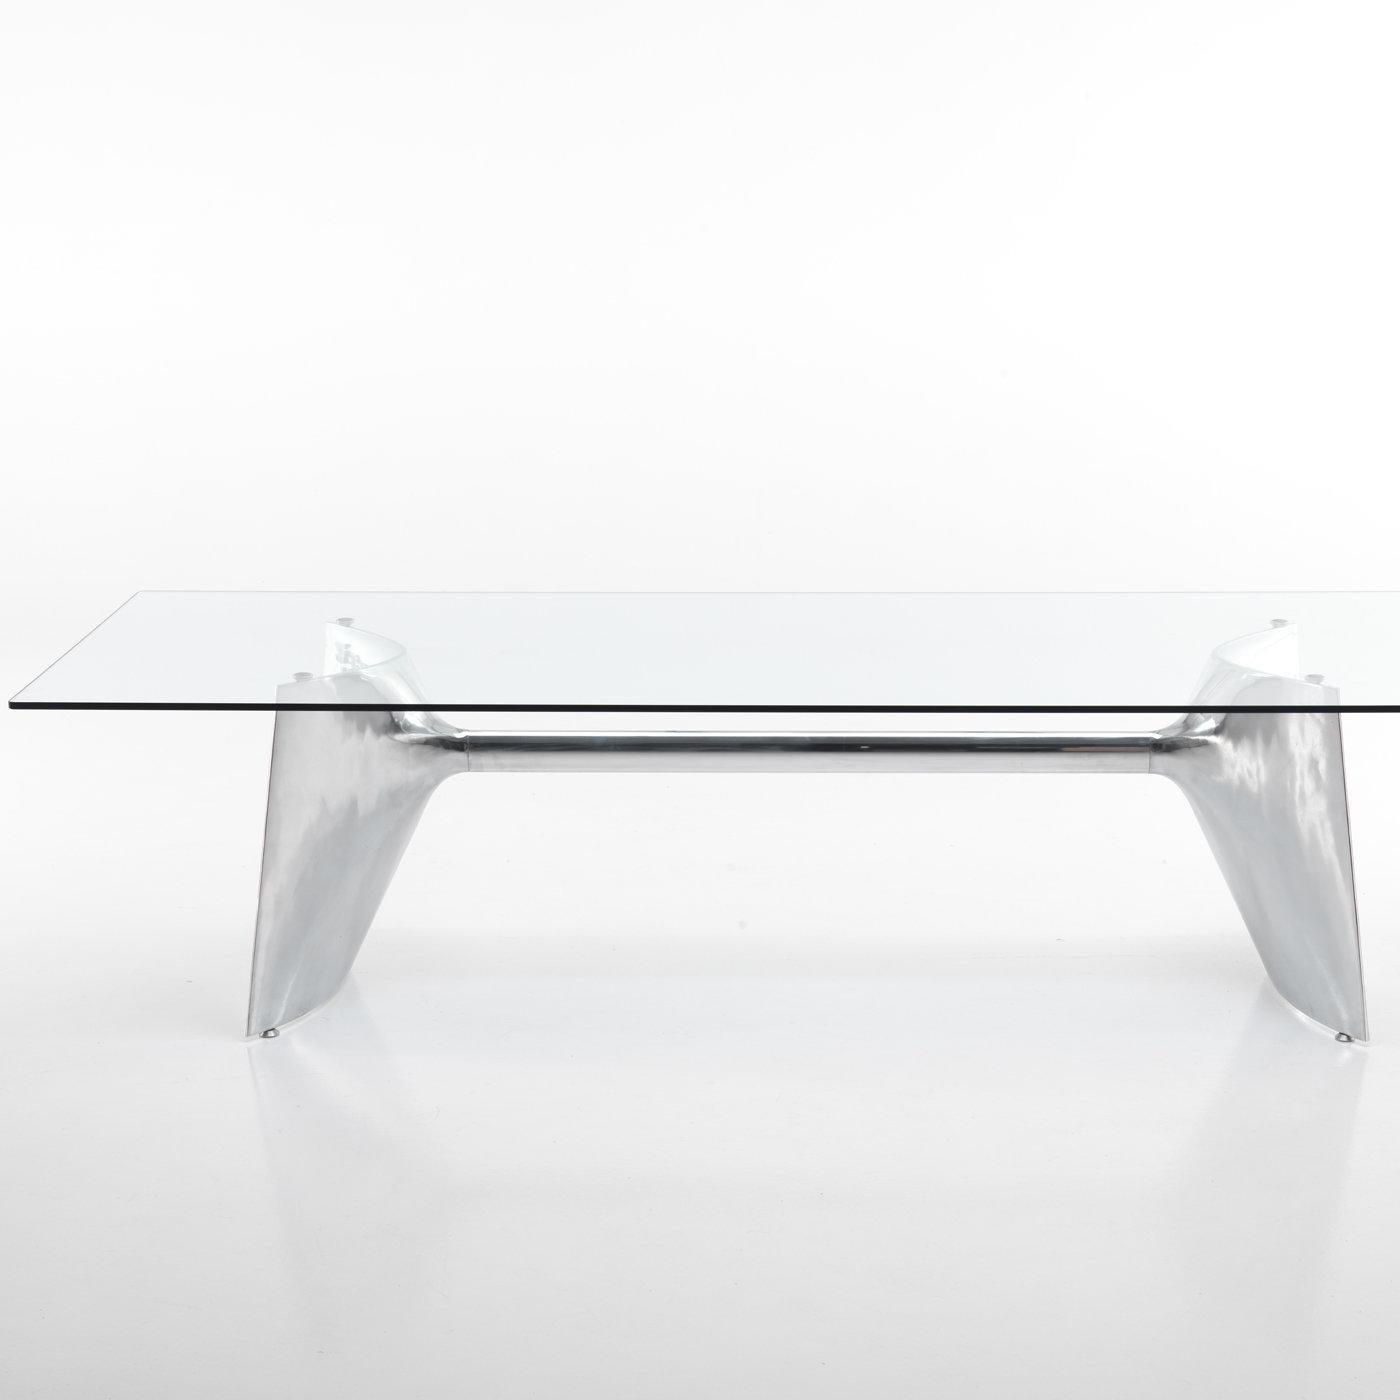 Conçue par Jeff Miller, cette table élégante présente une combinaison étonnante de matériaux qui animera une salle à manger moderne avec un style chatoyant. Le plateau rectangulaire est en verre trempé extra-clair, ce qui permet de voir pleinement